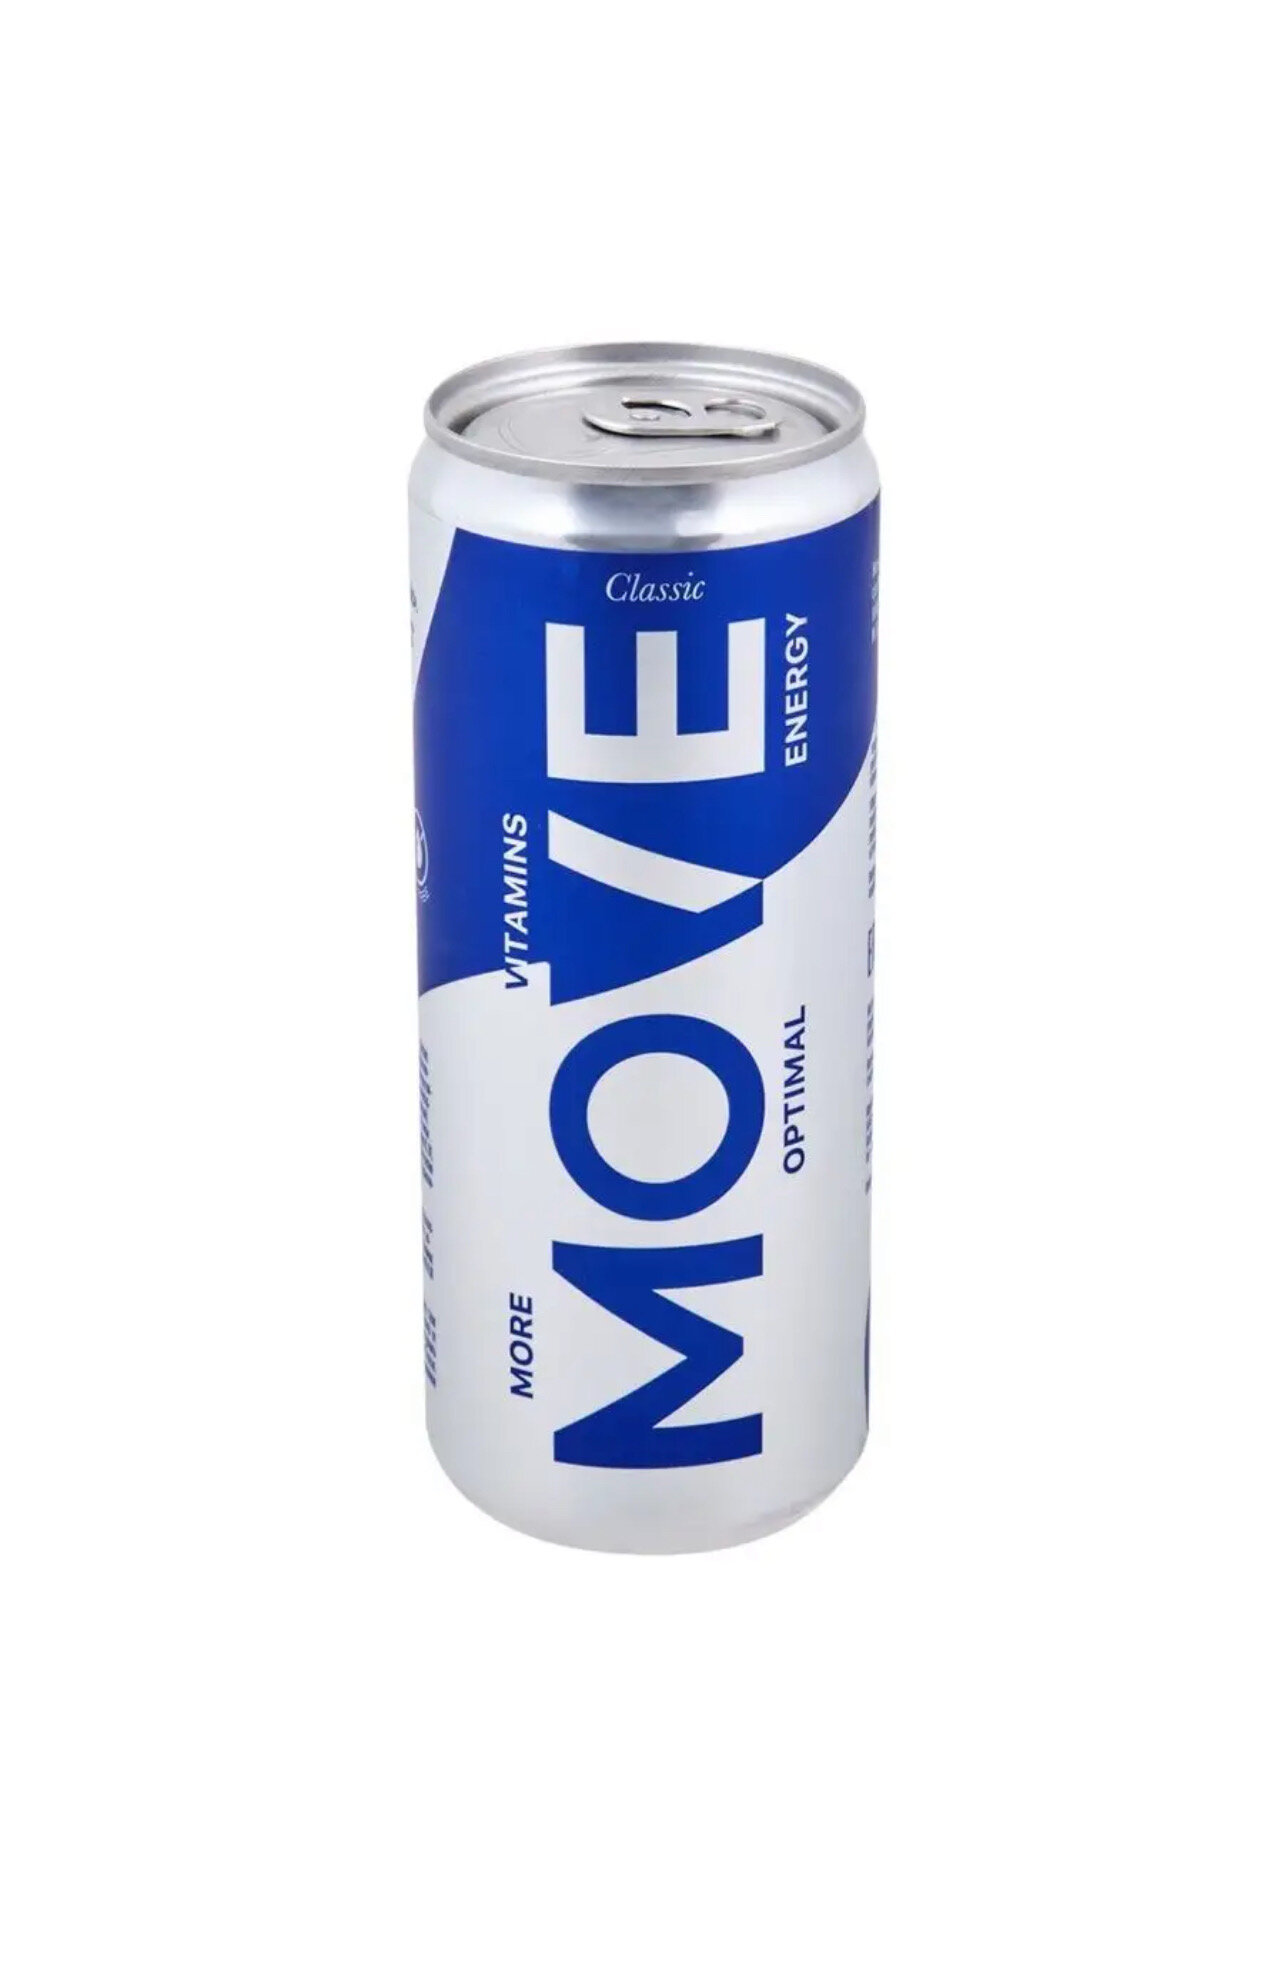 Тонизирующий напиток "Move" Classic от бренда "Chiko-Choko" 6*0,33 мл (энергетик)